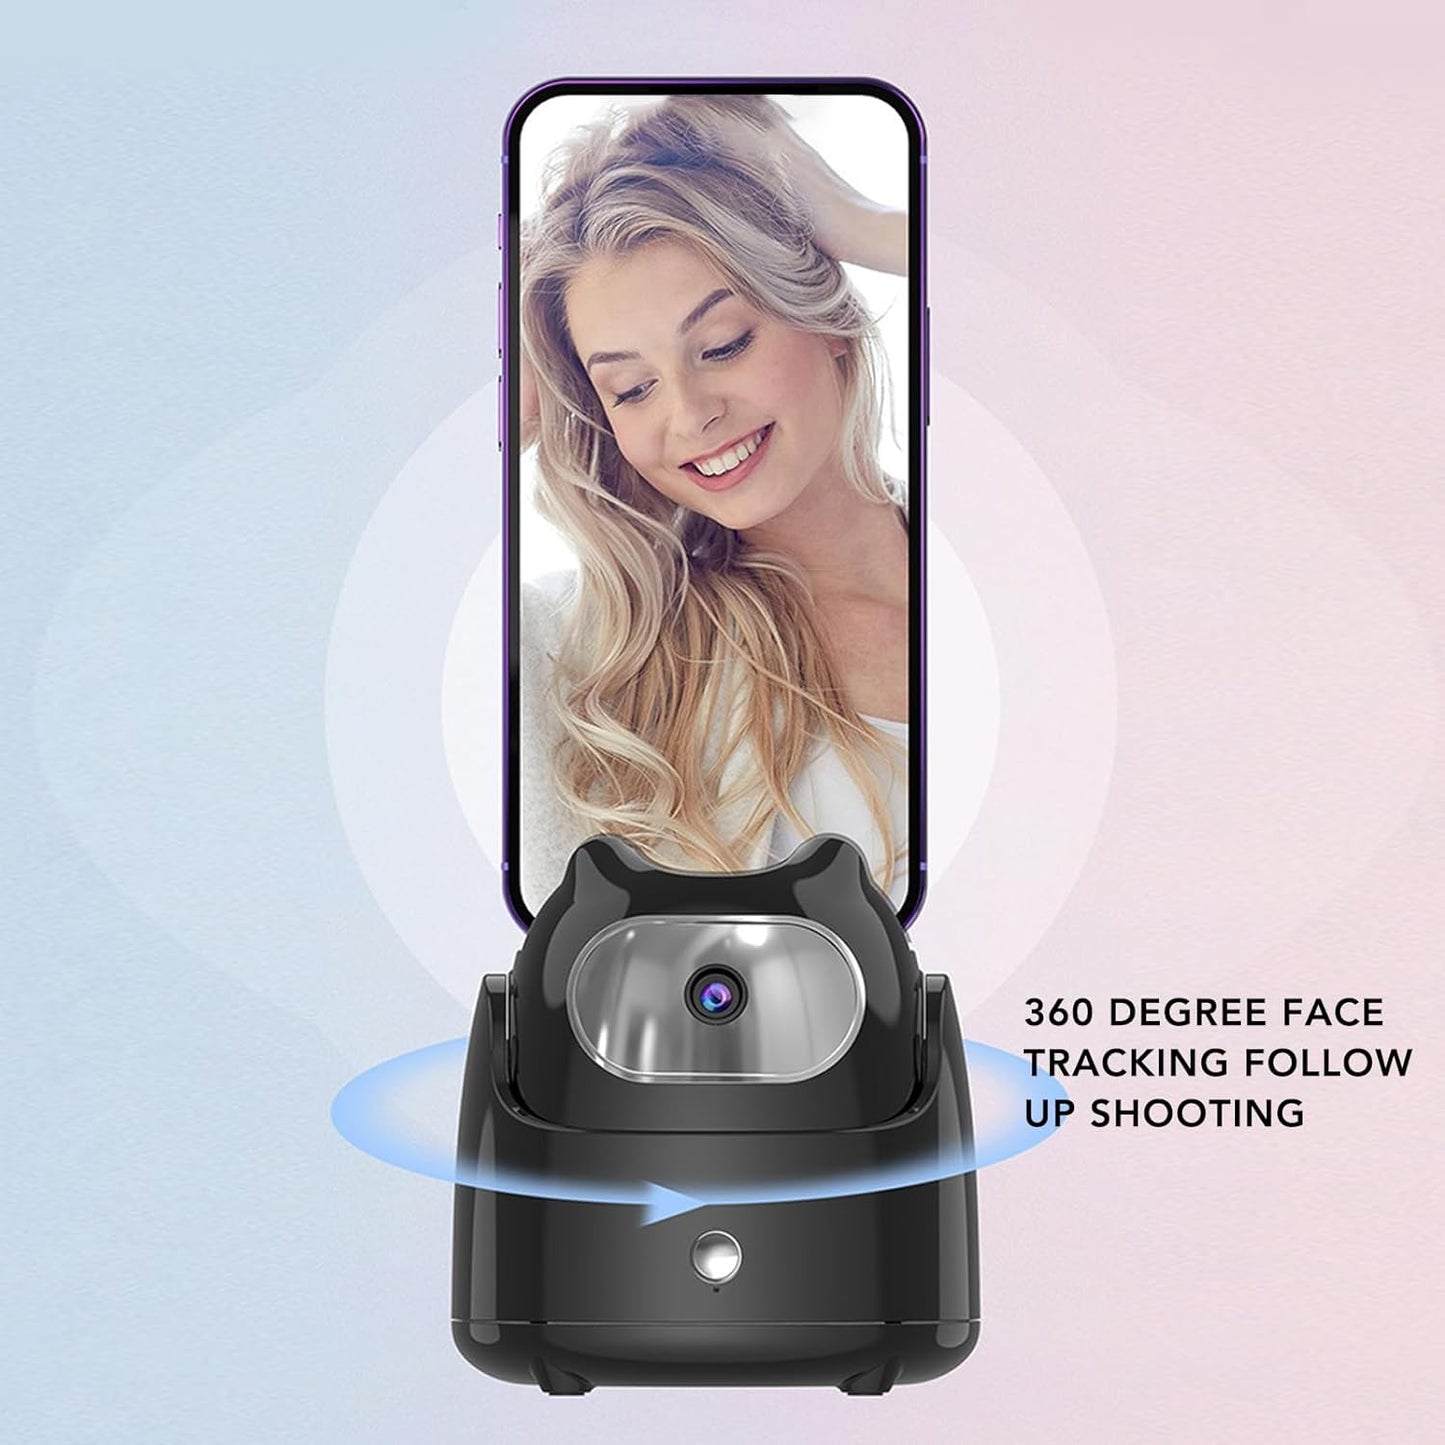 MotionSnap | AI-ansiktsavkänning för perfekta selfies och videor